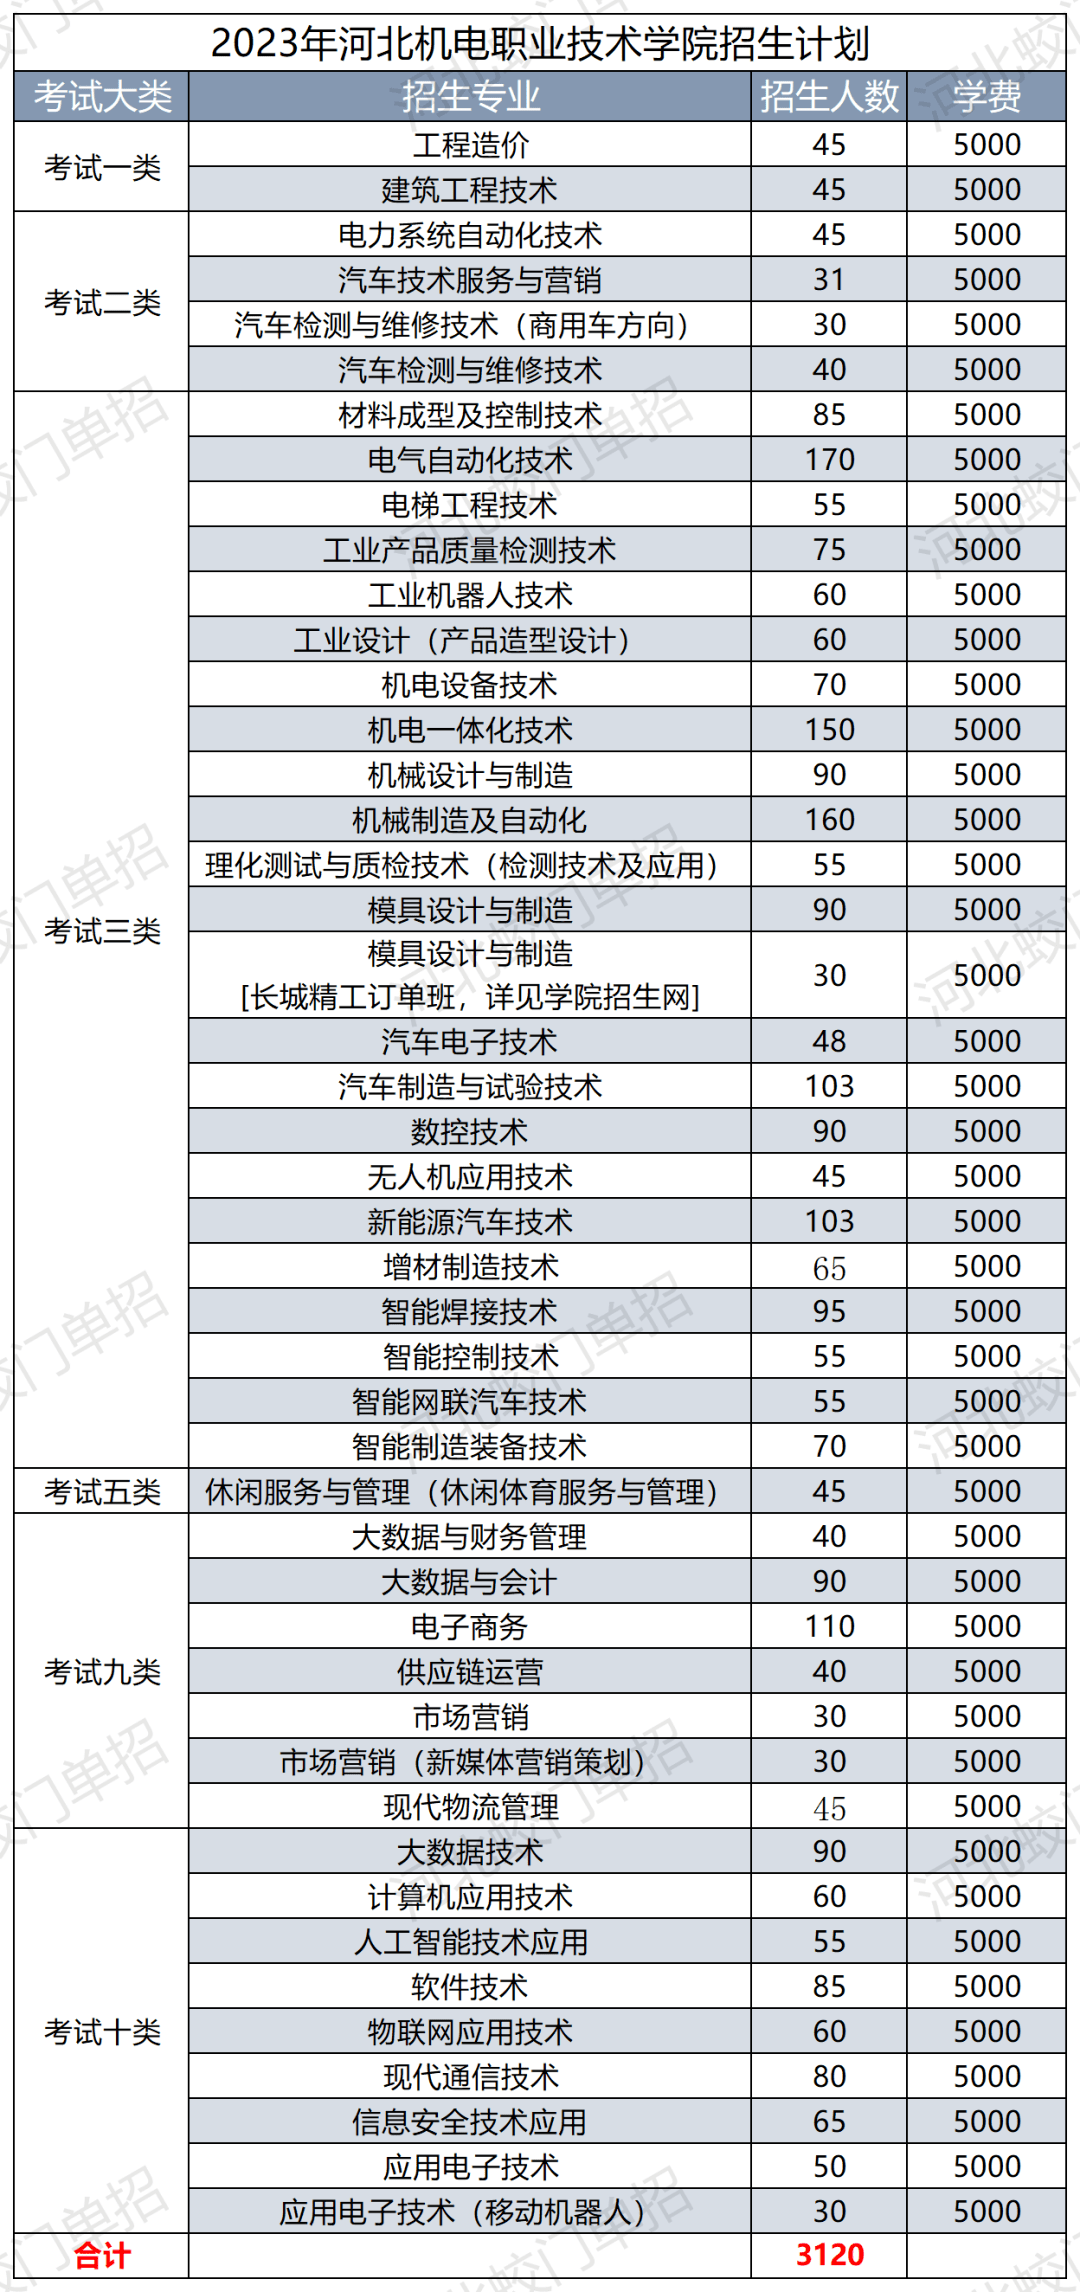 【单招院校】河北机电职业技术学院2023年招生简章k1体育3915娱乐(图2)